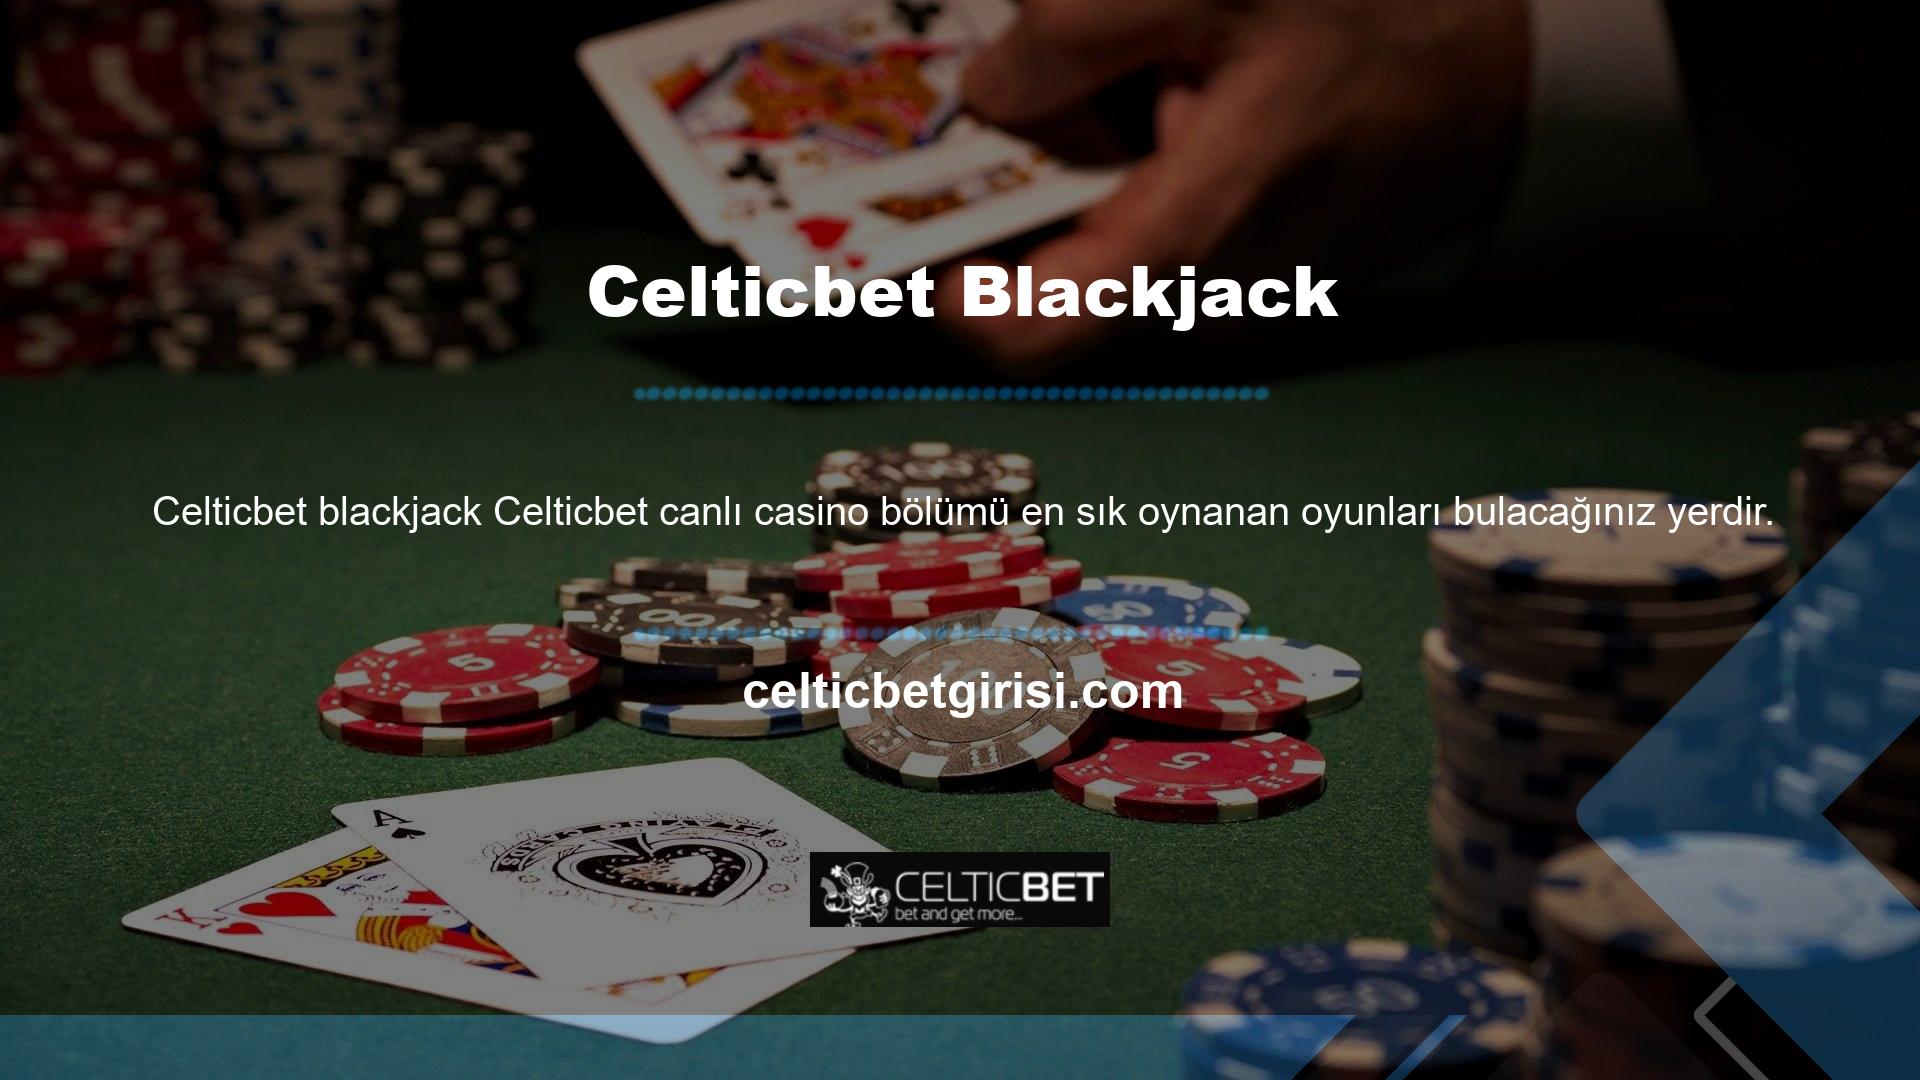 En yeni casino oyunları ve canlı casino oyun seçenekleri şu adreste mevcuttur: Celticbet TV'de gerçek bahisçiler